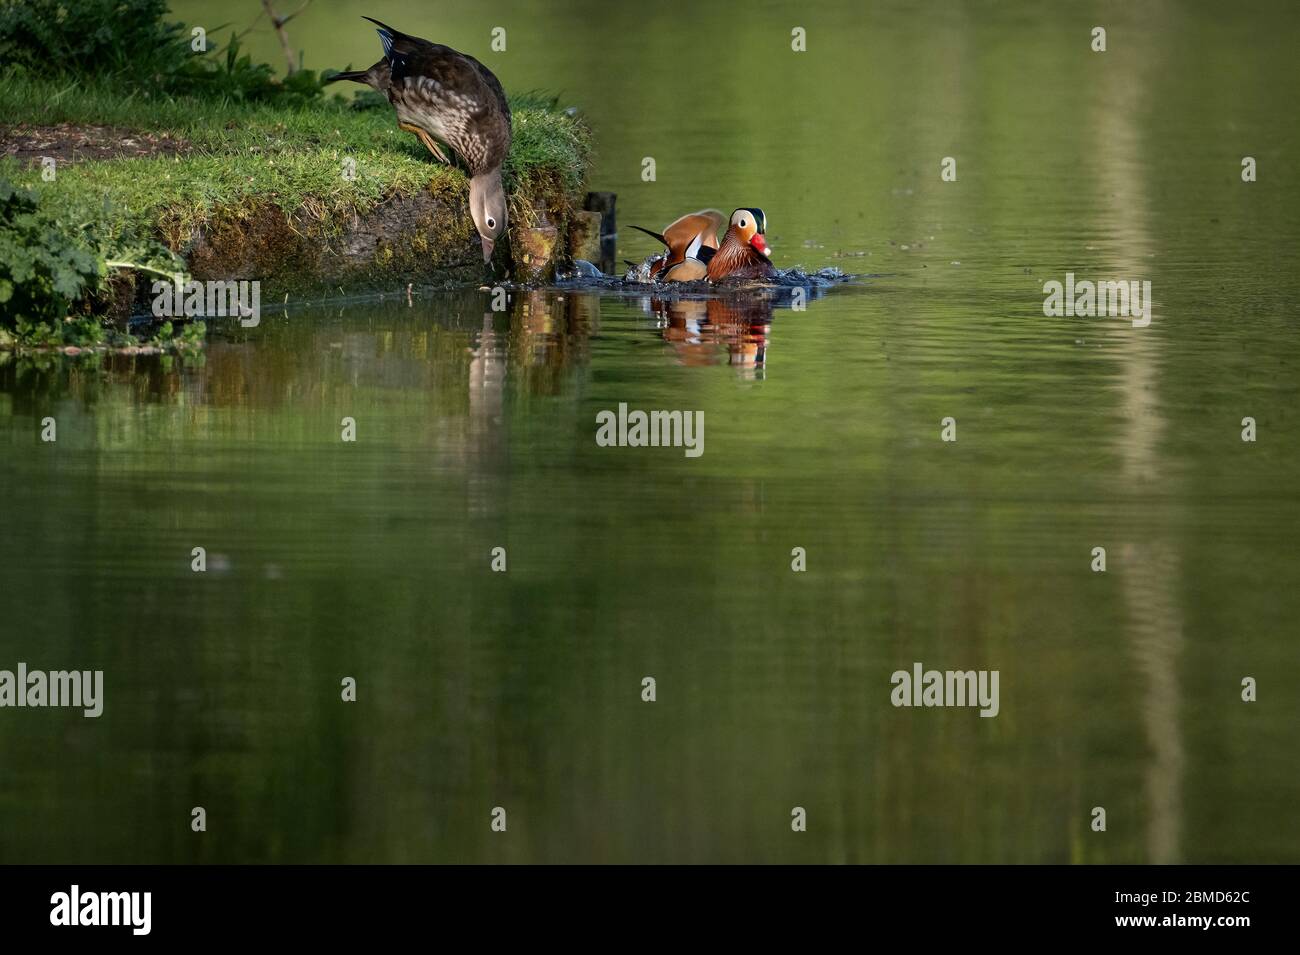 Maschi e femmine Mandarin Ducks (Aix galericulata) sulla riva del fiume a Cheshire, Inghilterra, UK la femmina si sta allungando in acqua per bere witjh pl Foto Stock